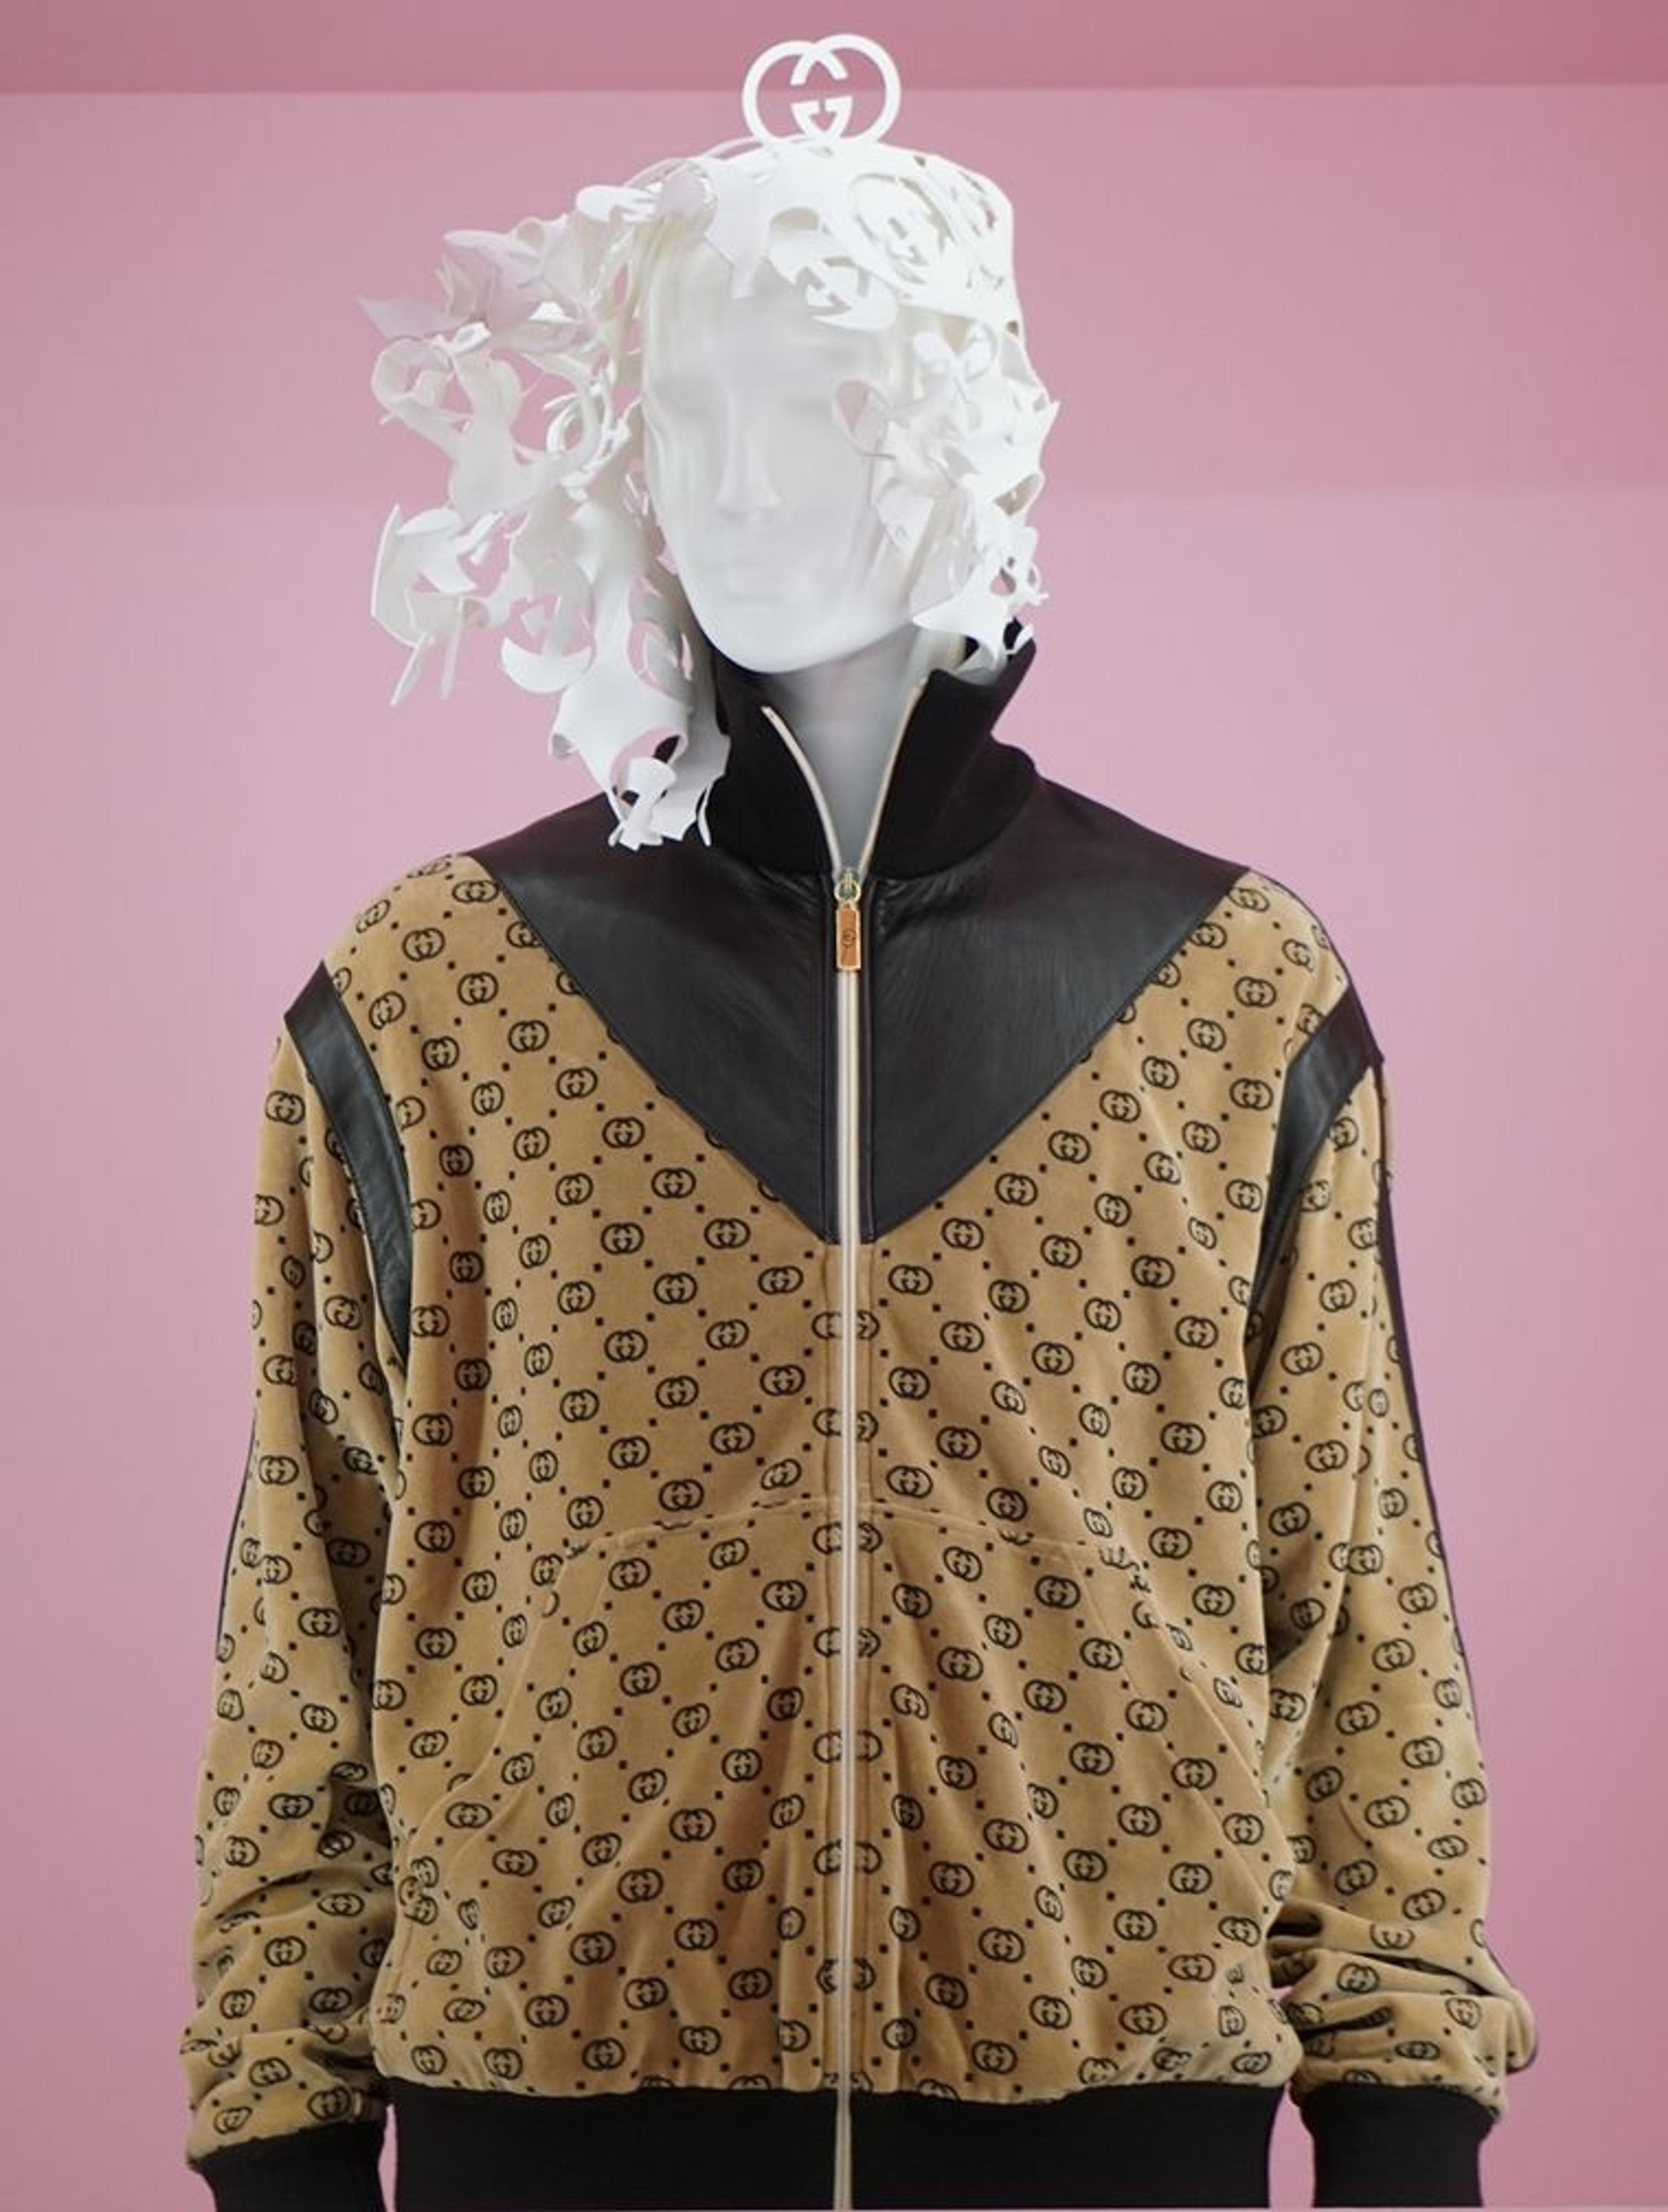 A Gucci jacket designed by Harlem-based fashion designer Dapper Dan.